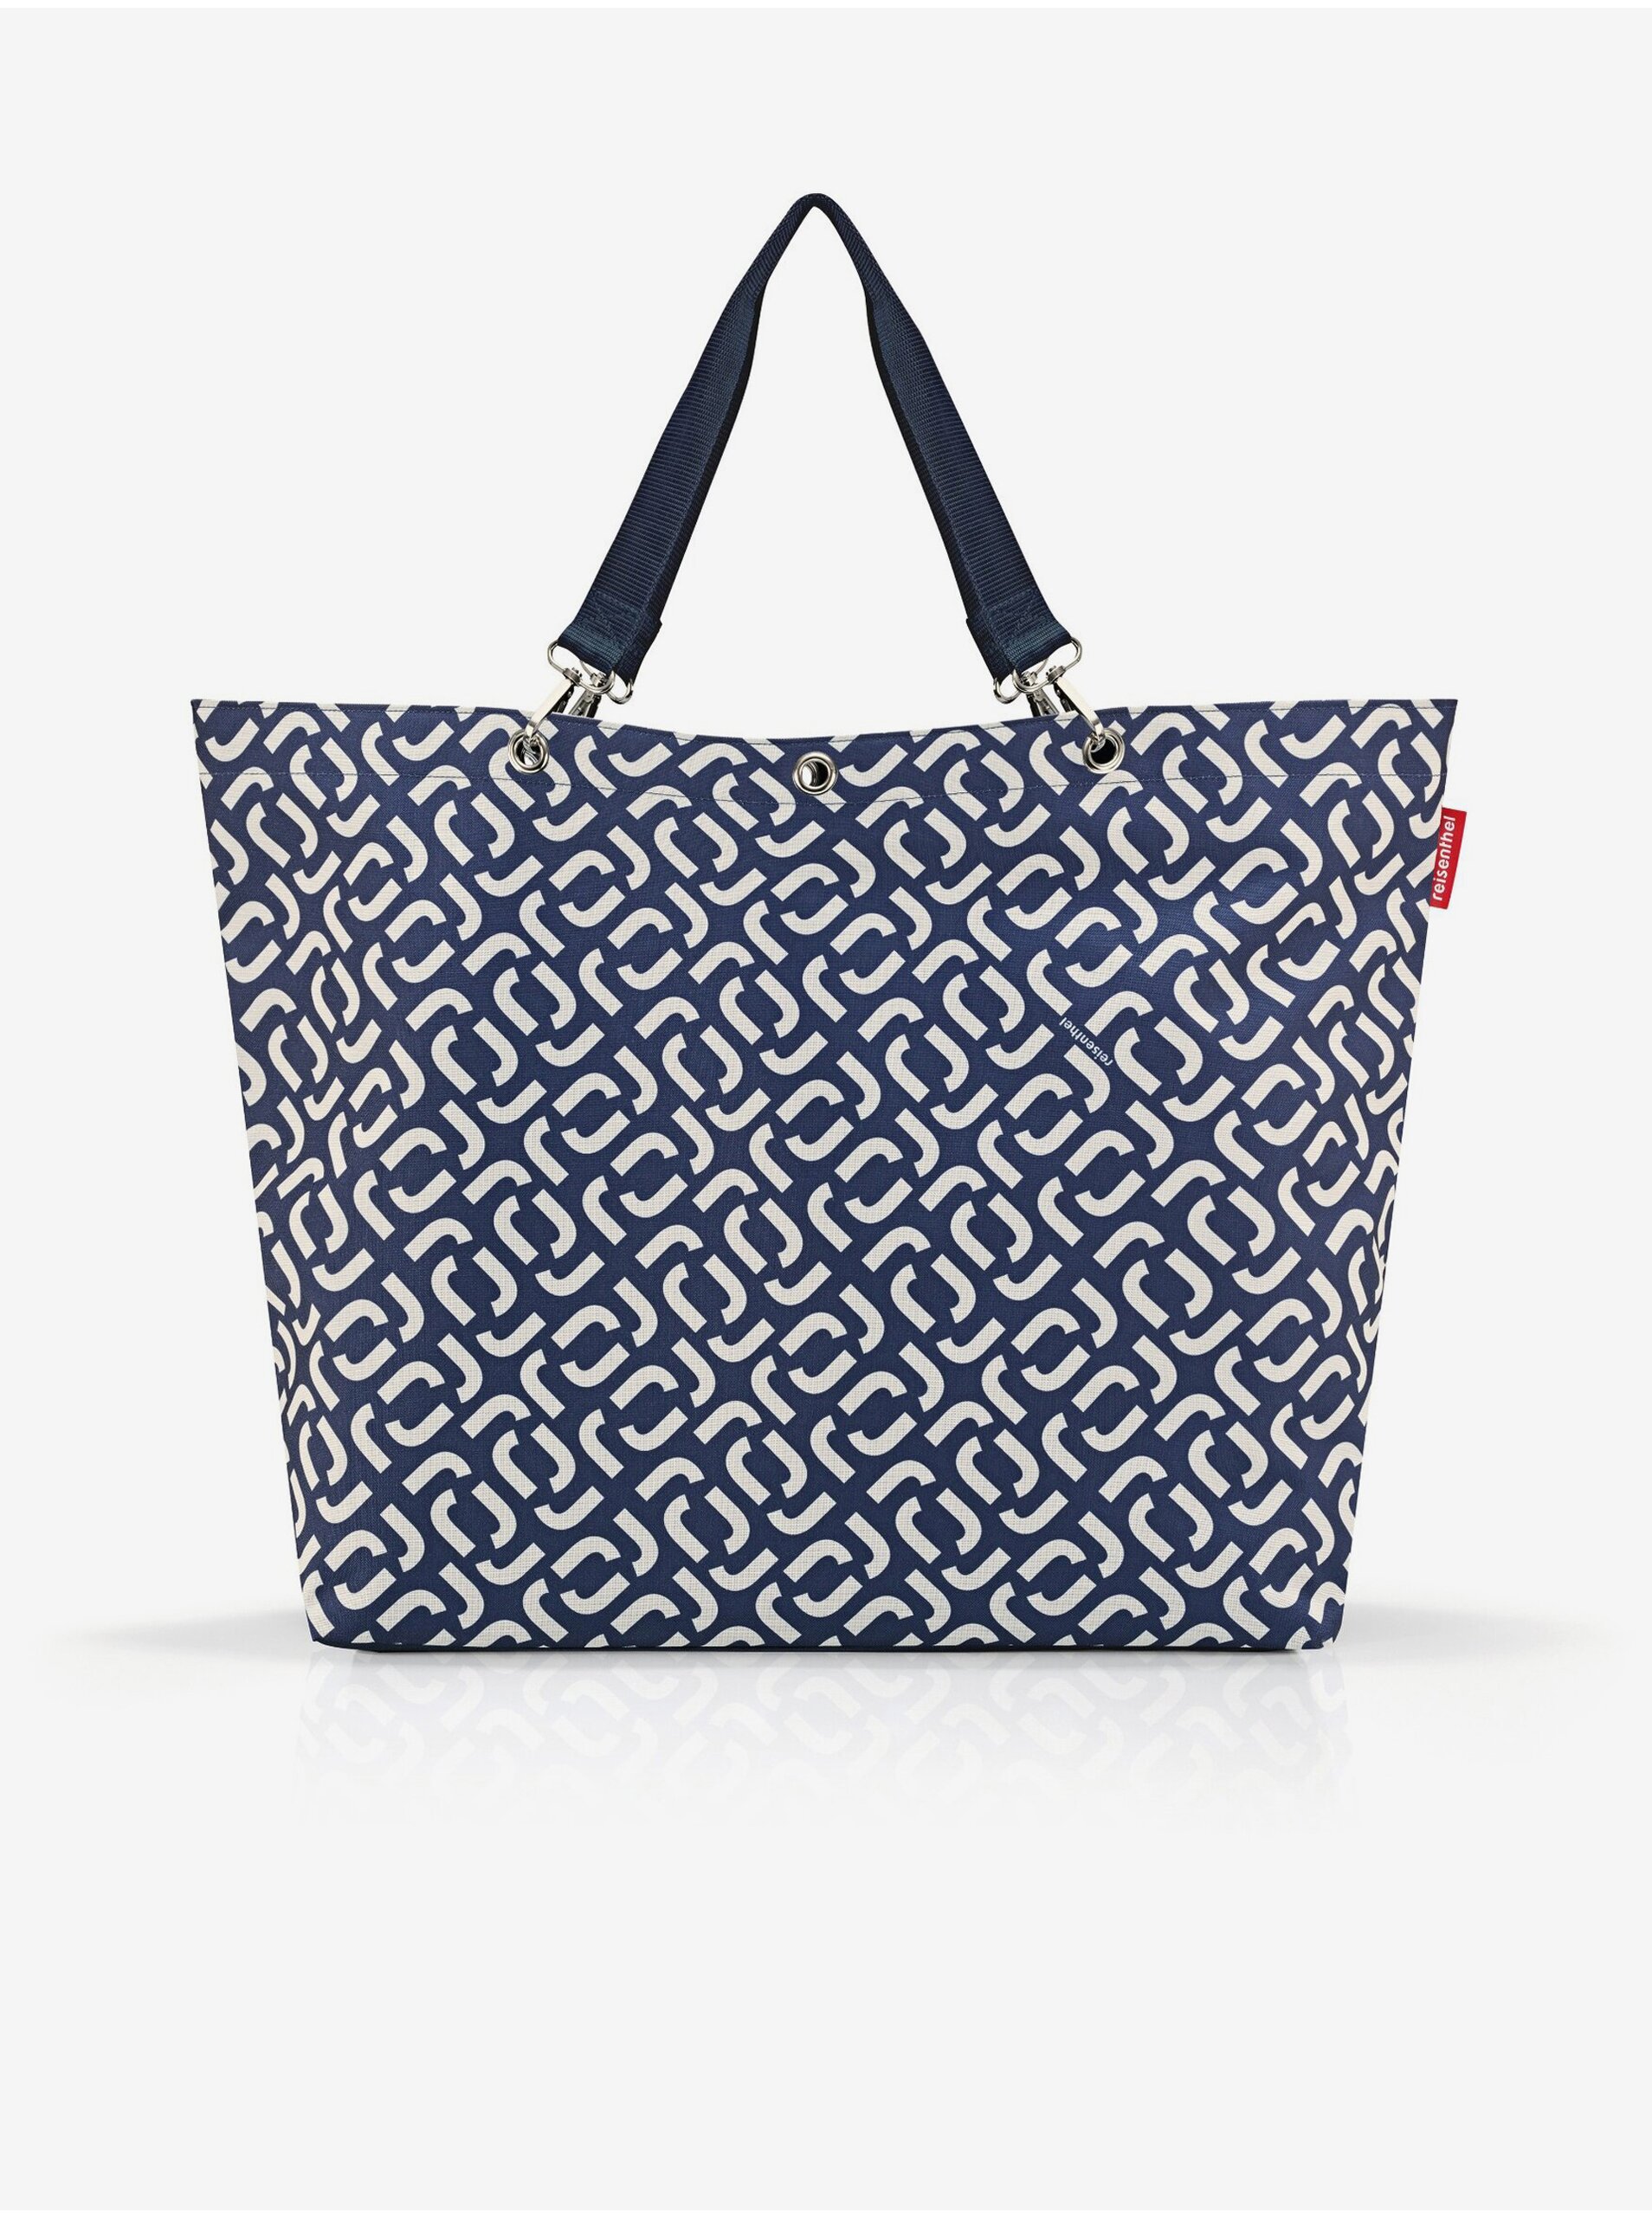 Lacno Tmavomodrá dámska vzorovaná veľká shopper taška Reisenthel Shopper XL